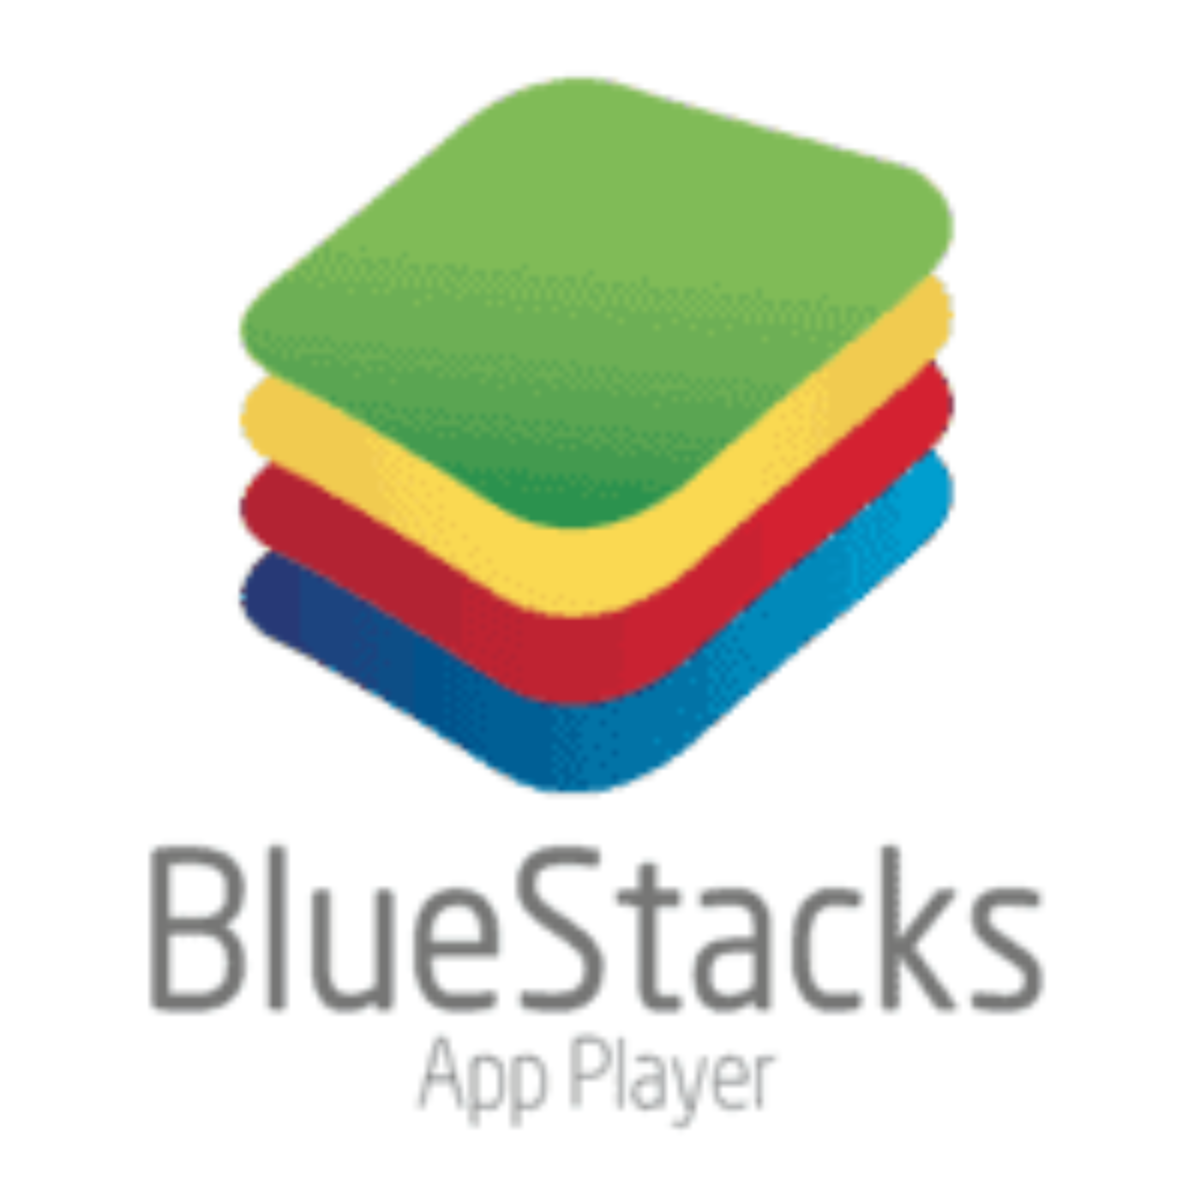 Download Bluestacks App Player Terbaru Gratis 4 220 0 1109